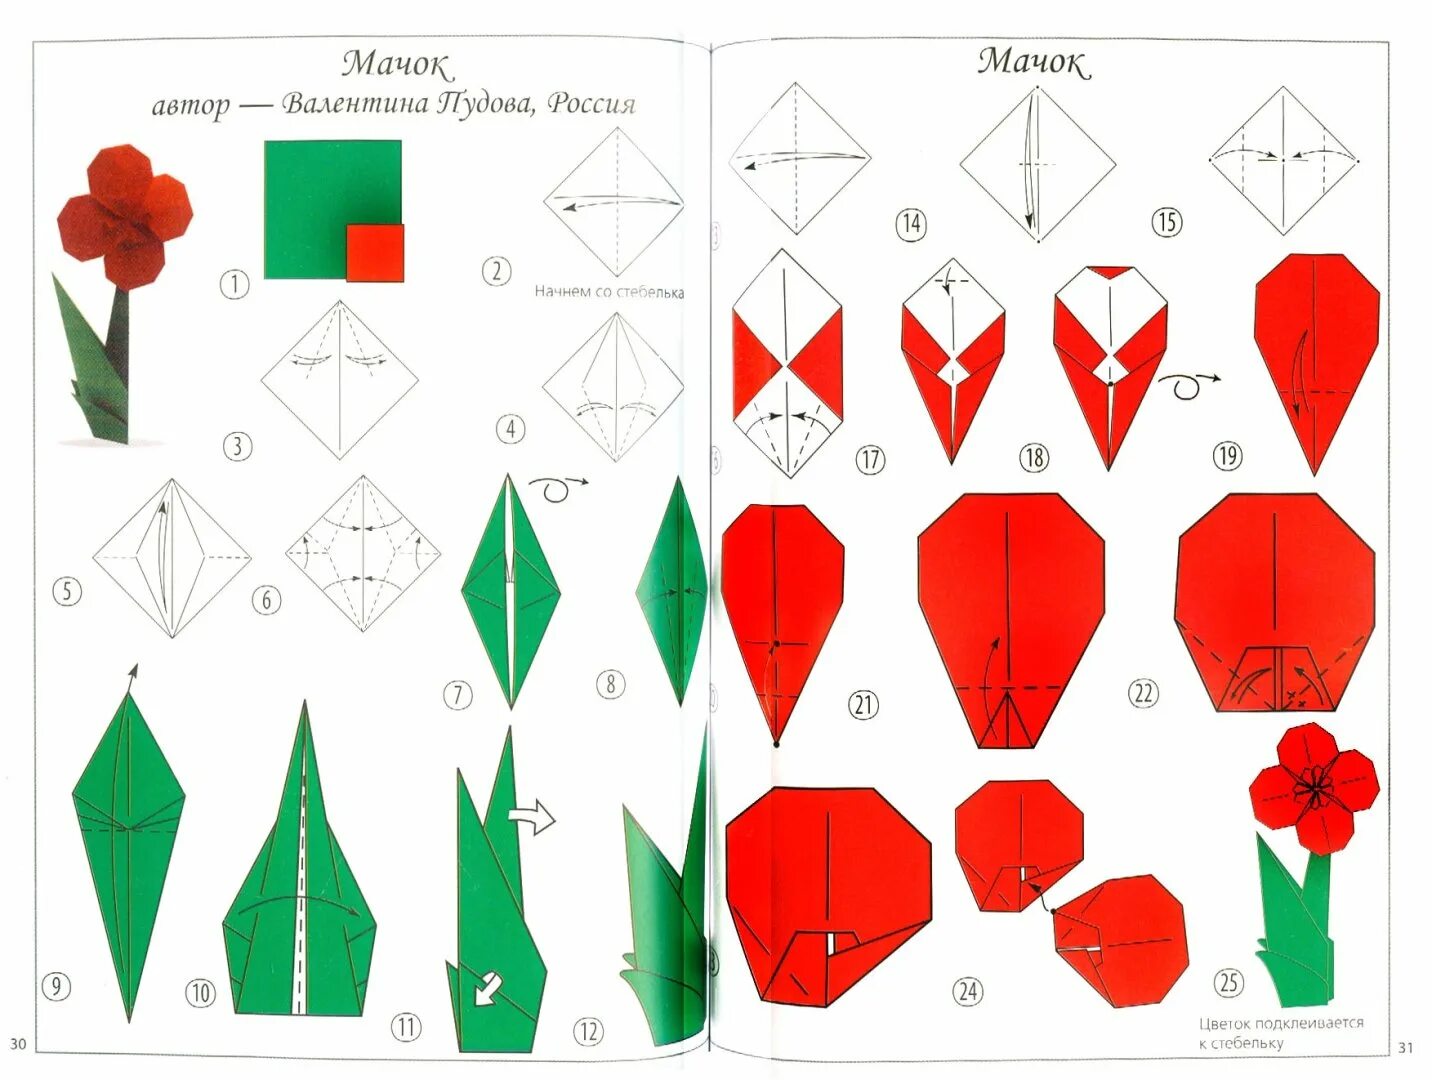 Оригами из бумаги для начинающих тюльпан схема пошагово. Оригами тюльпан пошагово для начинающих. Оригами тюльпан из бумаги схема для детей. Оригами тюльпан схема для начинающих пошагово. Оригами цветов поэтапно